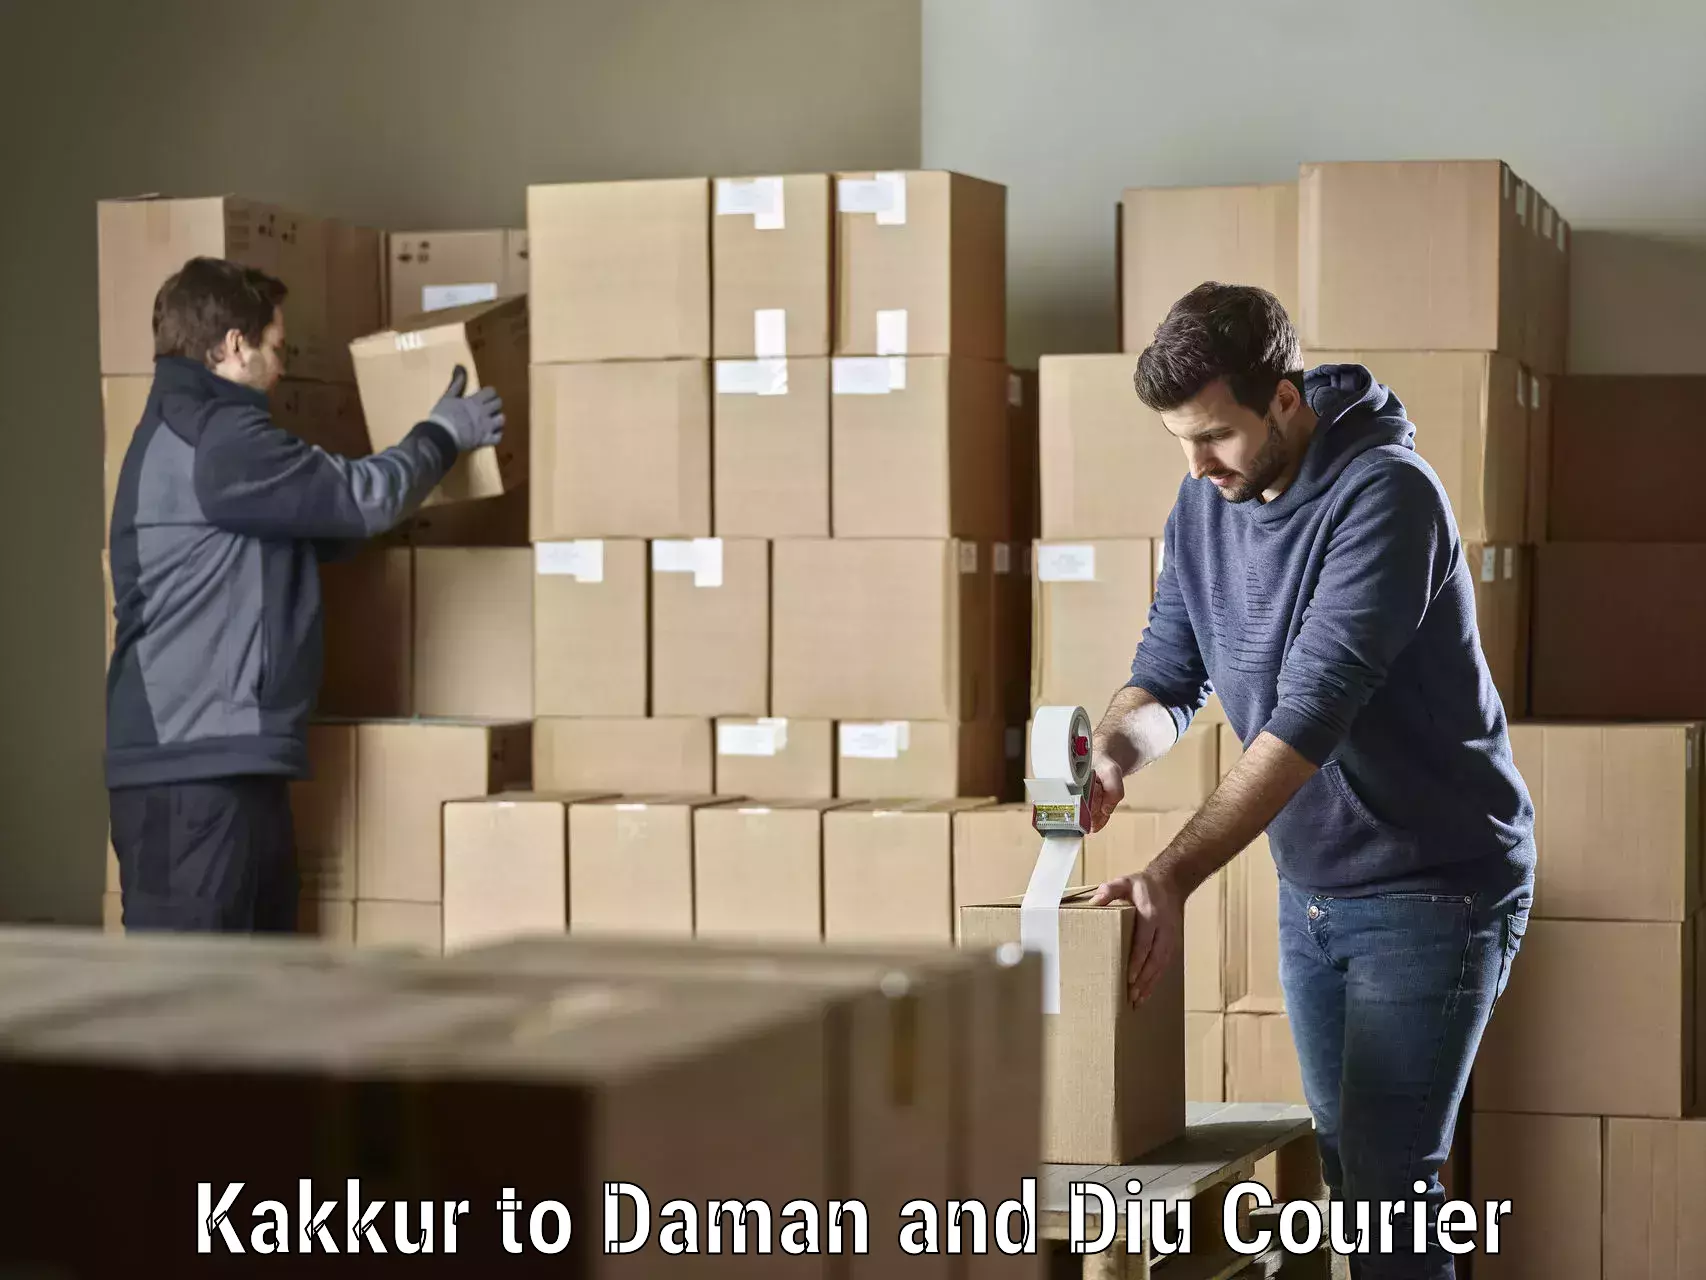 Efficient parcel service Kakkur to Diu